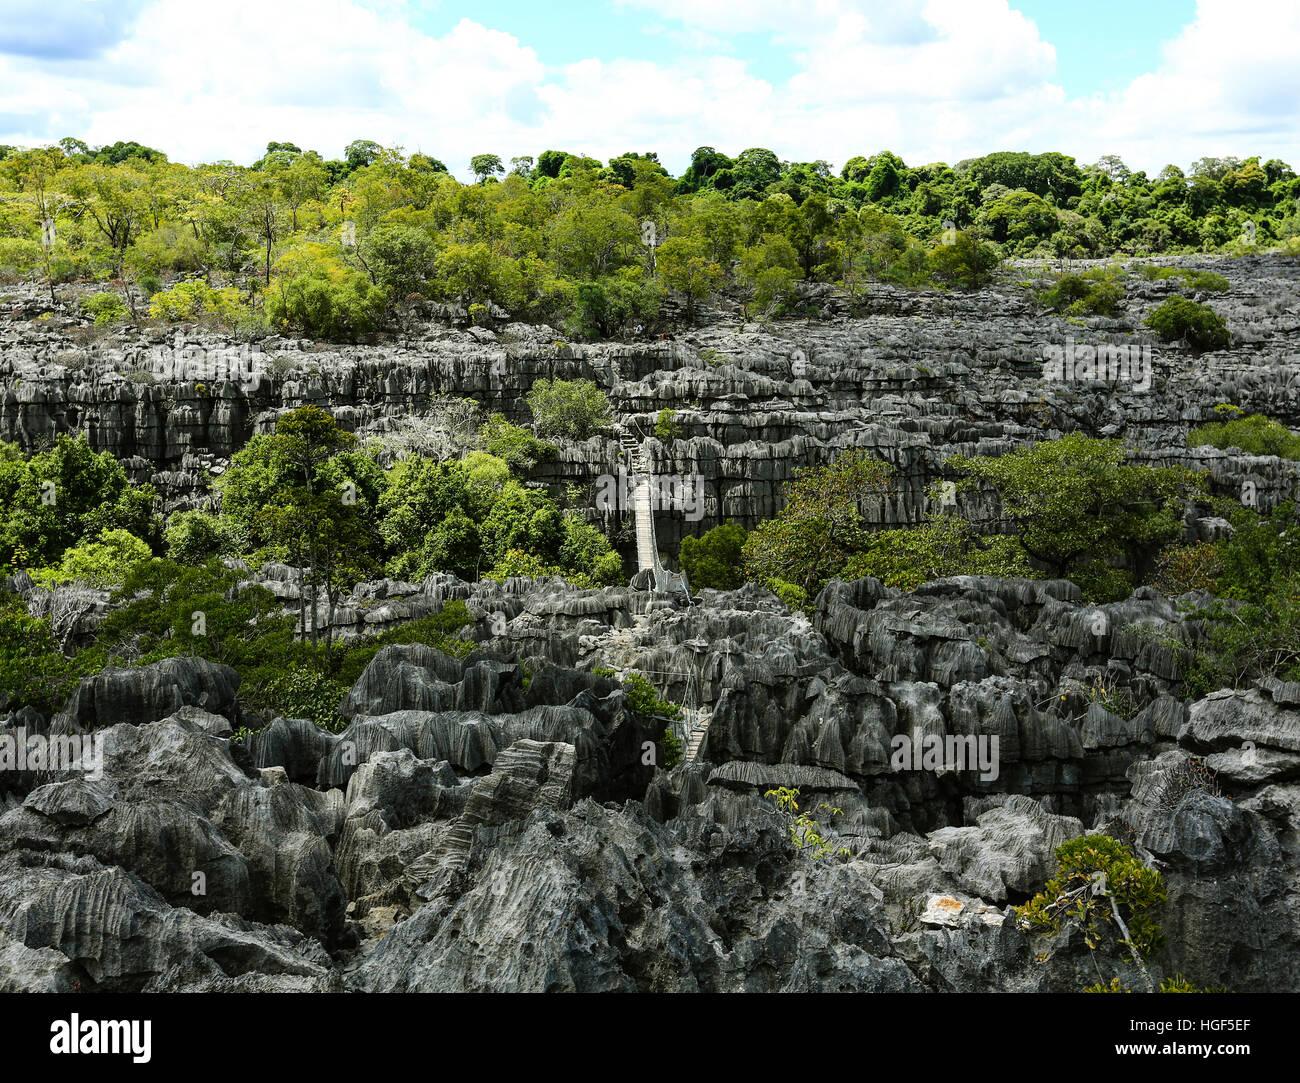 Tsingy de Ankarana National Park, karst landscape with Jurassic era limestone, Ankarana Reserve, Madagascar Stock Photo